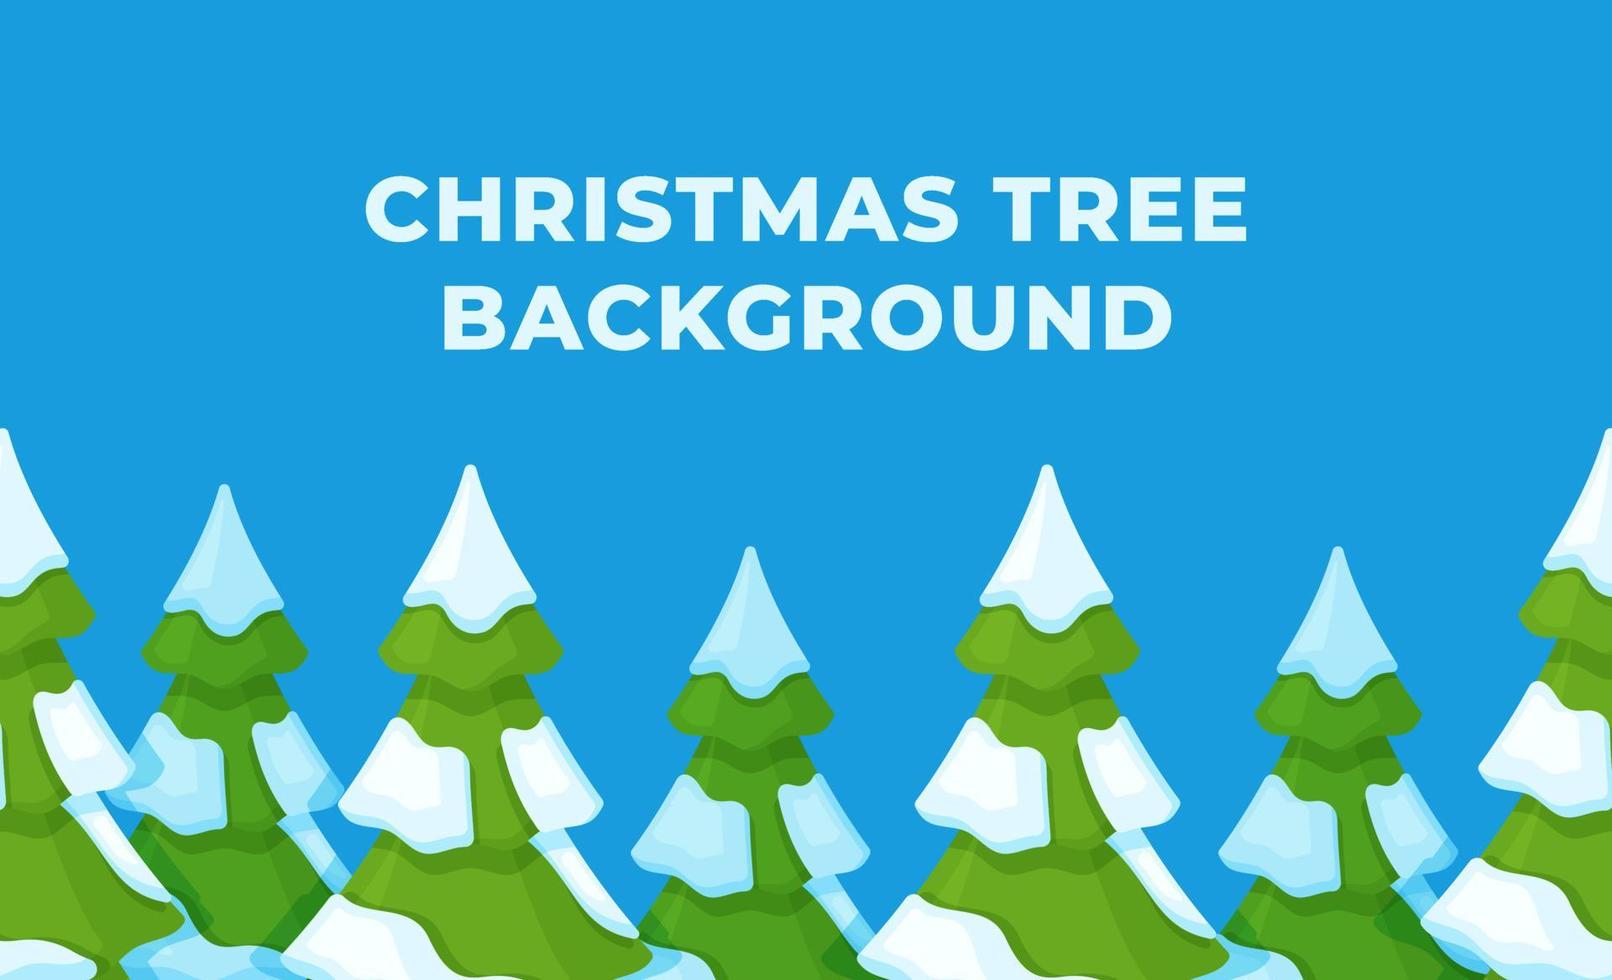 Vektor-Illustration eines Weihnachtsbaum-Hintergrunds. weihnachtskarte. neujahrskonzept. vektor